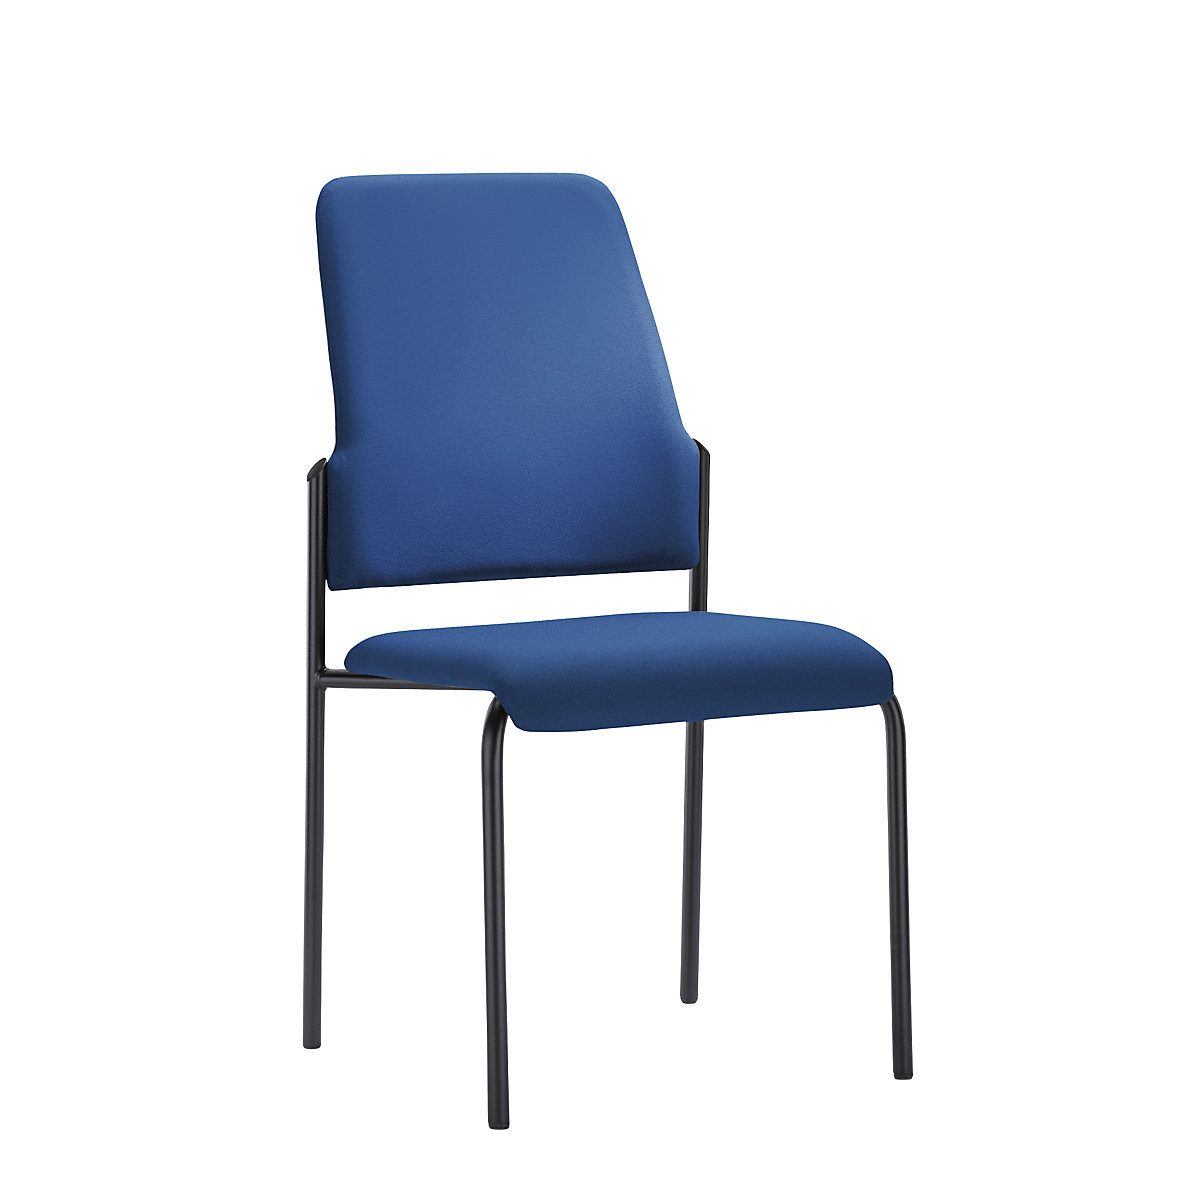 Bezoekersstoel GOAL, met 4 poten, VE = 2 stuks – interstuhl, stoelframe zwart, gentiaanblauw-5